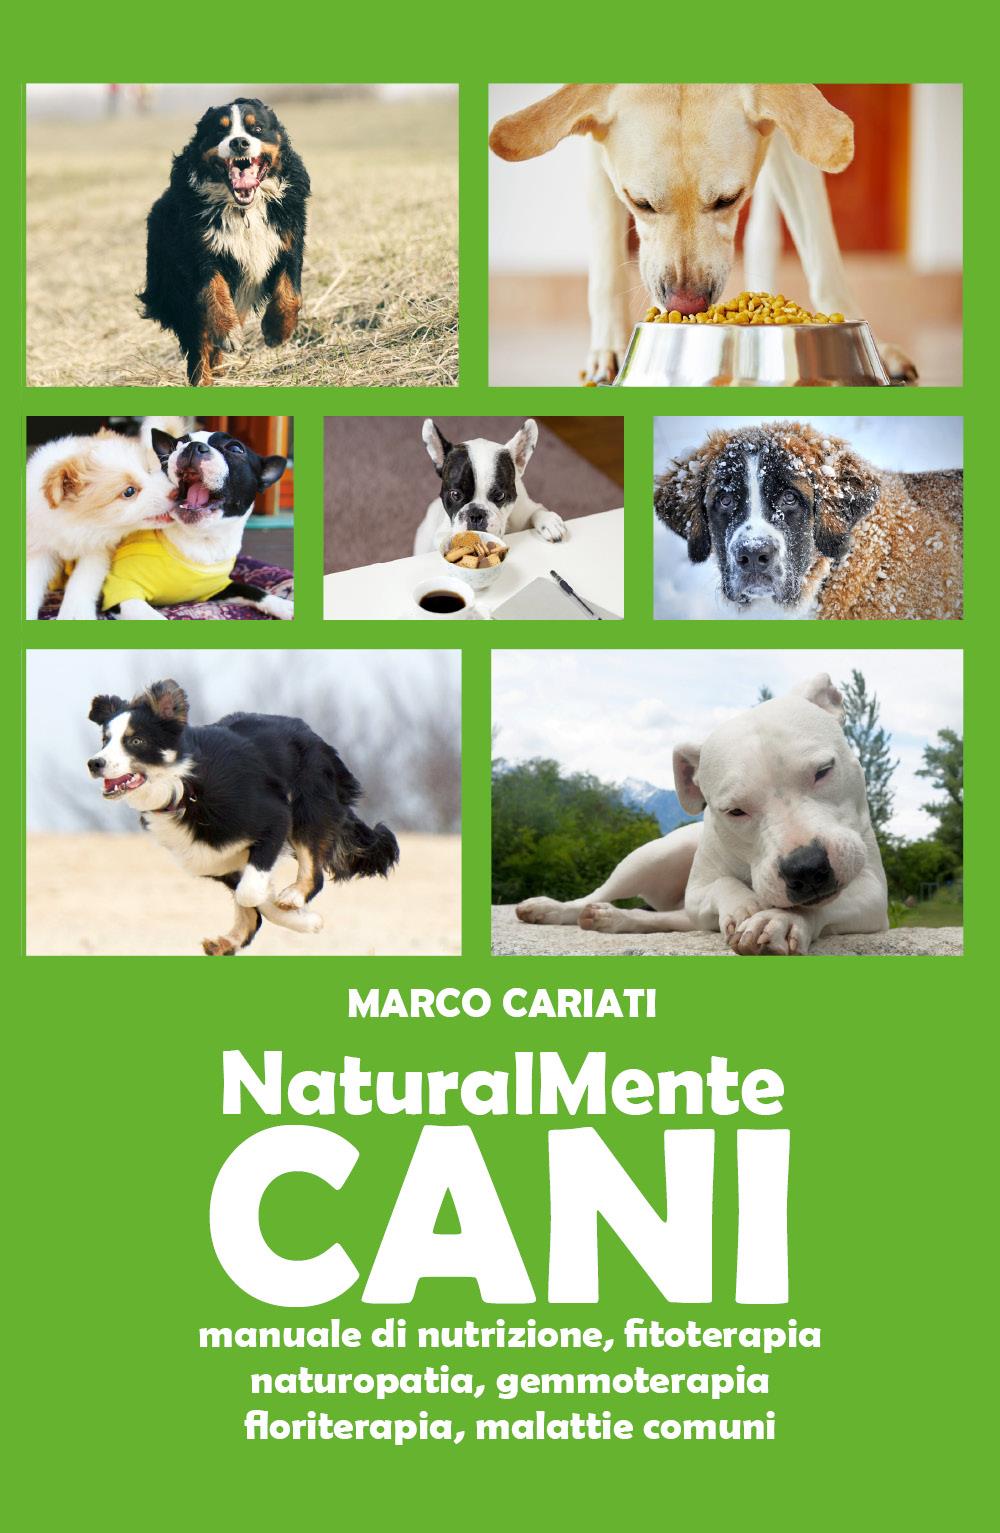 NaturalMente Cani